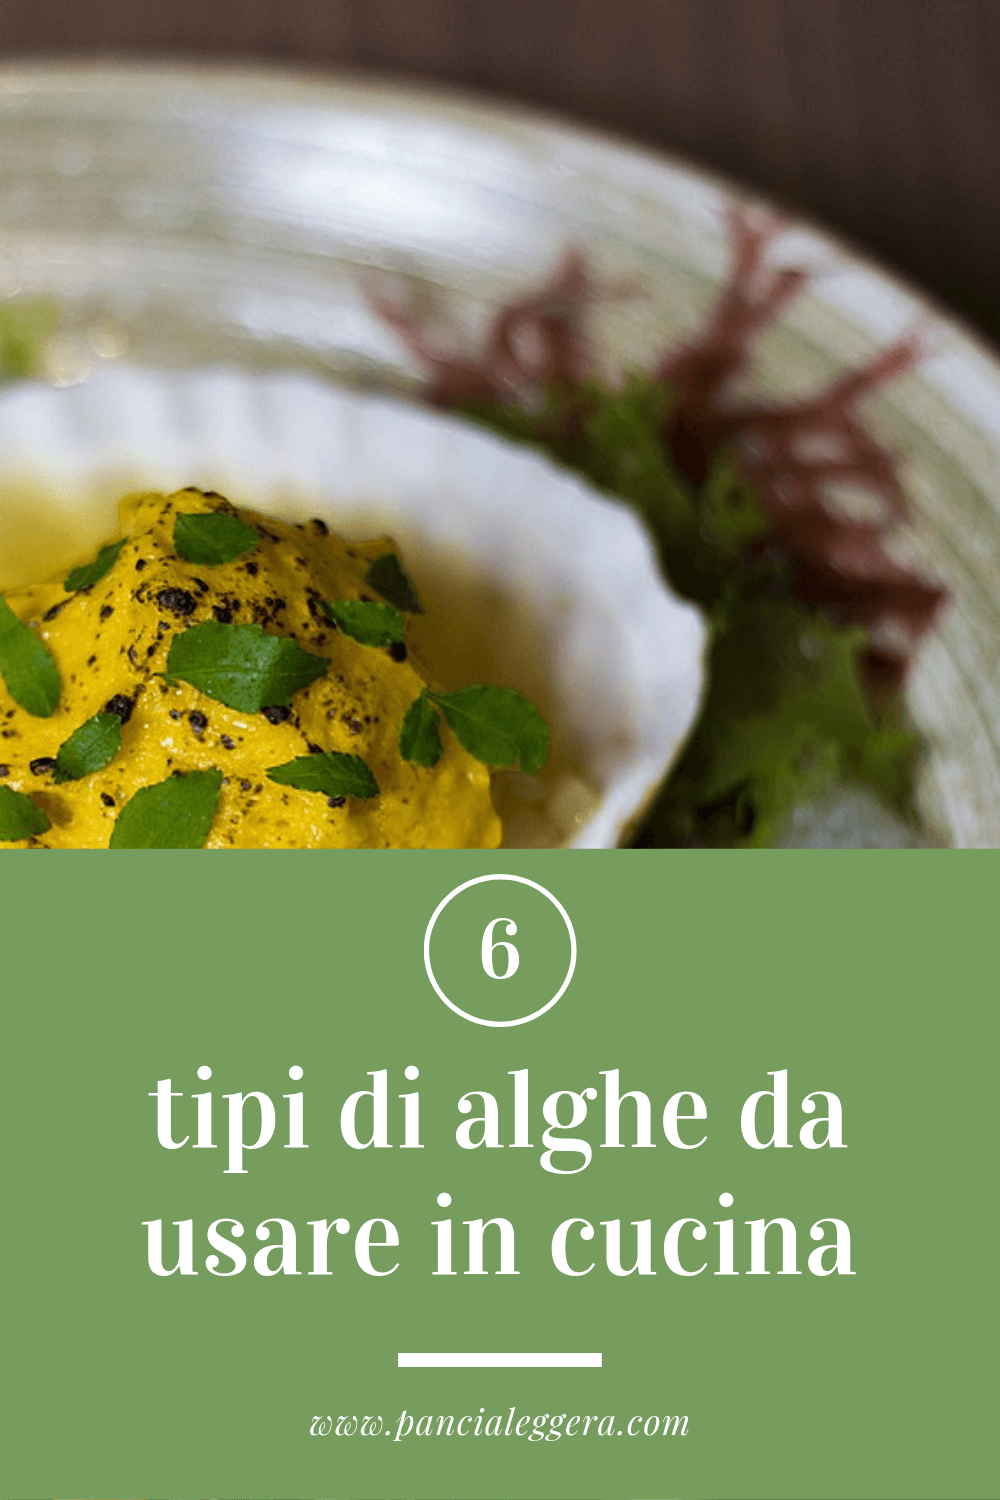 6 tipi di alghe più usate in cucina